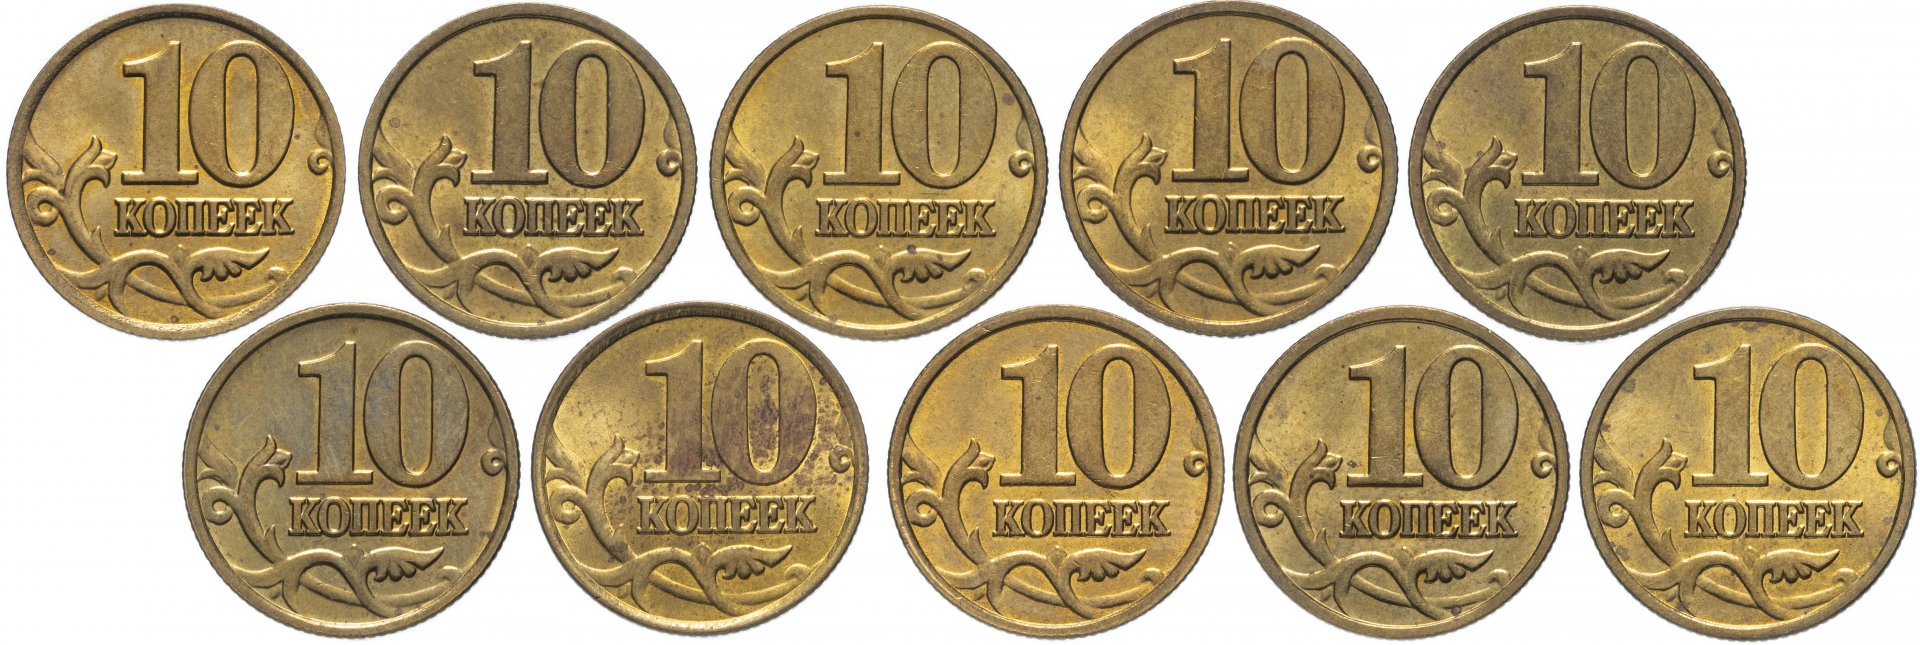 Российские монеты для детей